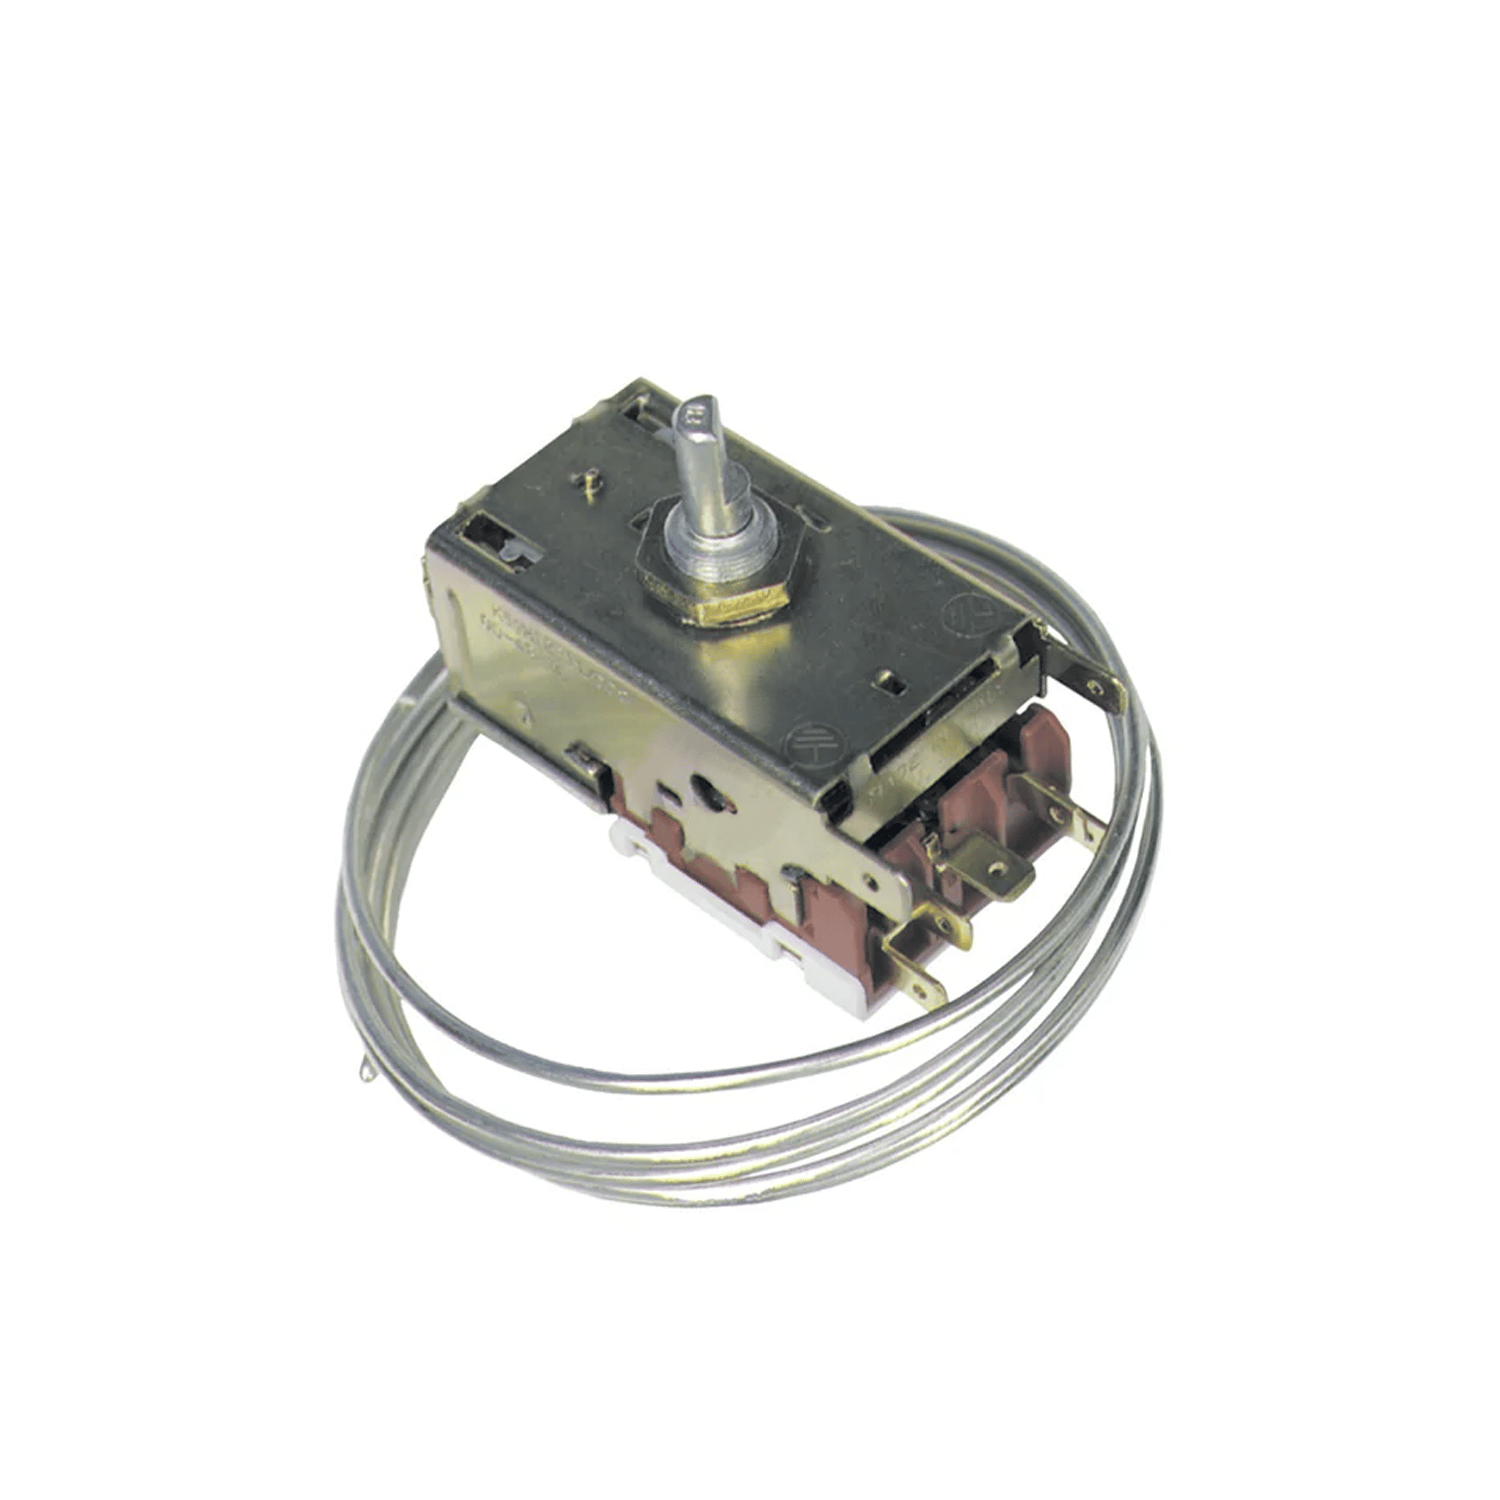 Thermostat Danfoss 077B6439 (EN60730) für Kühlschrank AEG ELECTROLUX, L 960mm